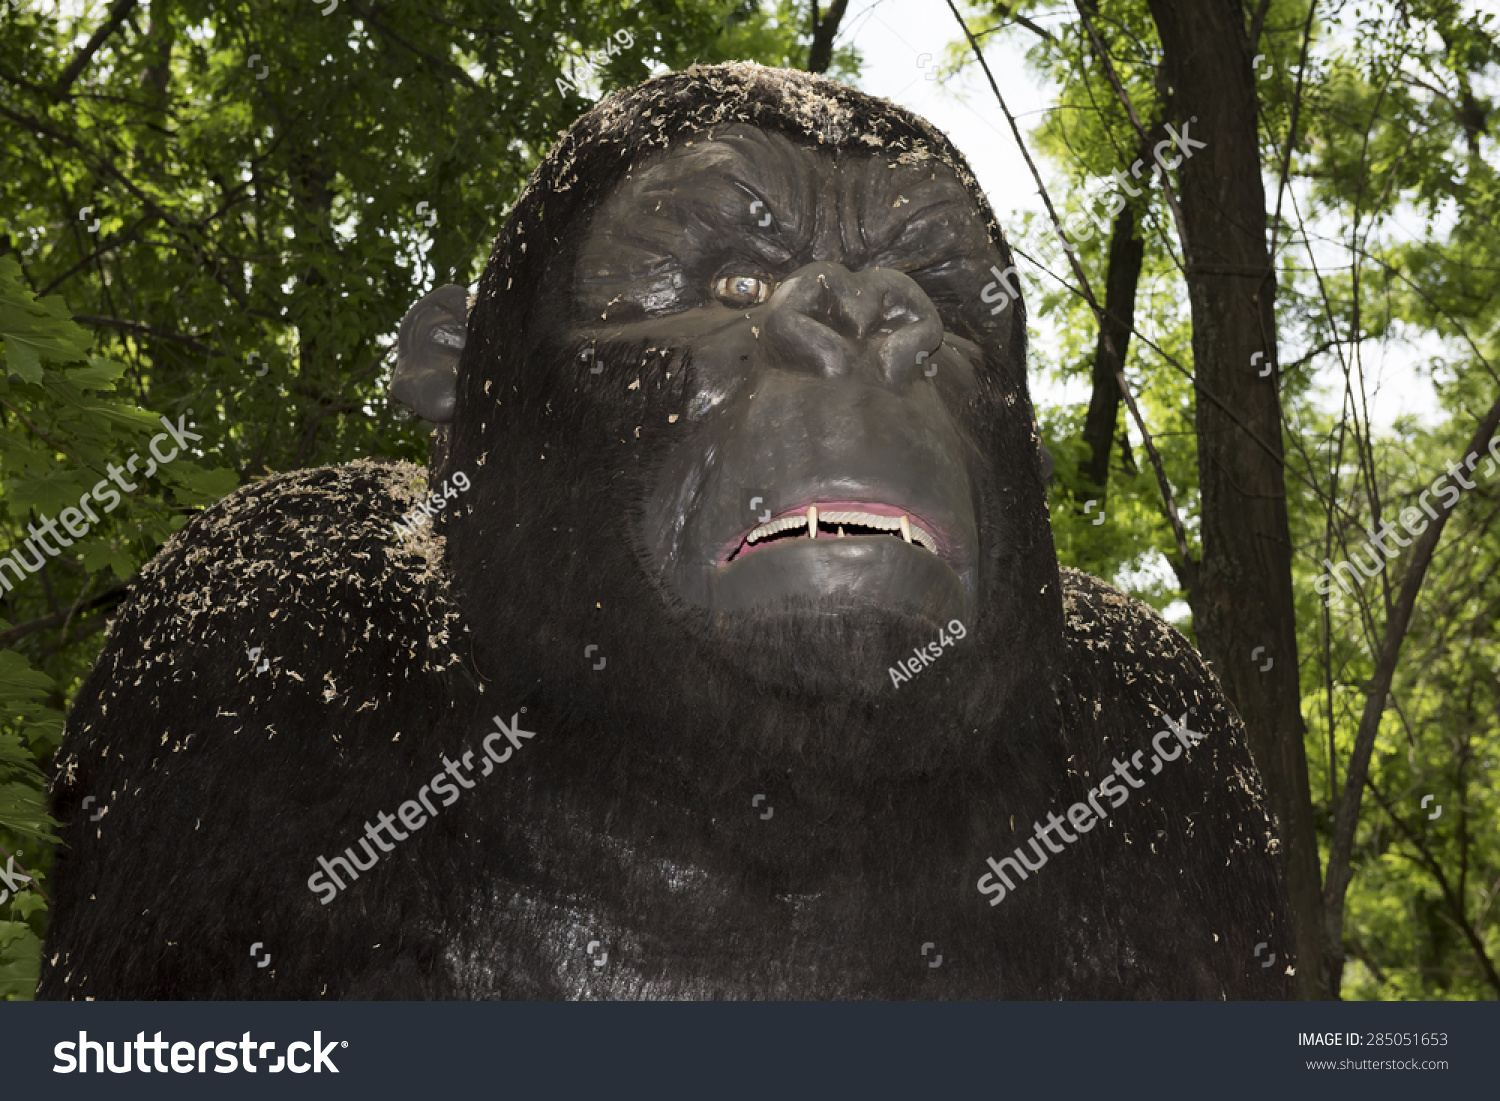 Gorilla Were Africa Dimension Germ 165175 Stock Photo 285051653 ...